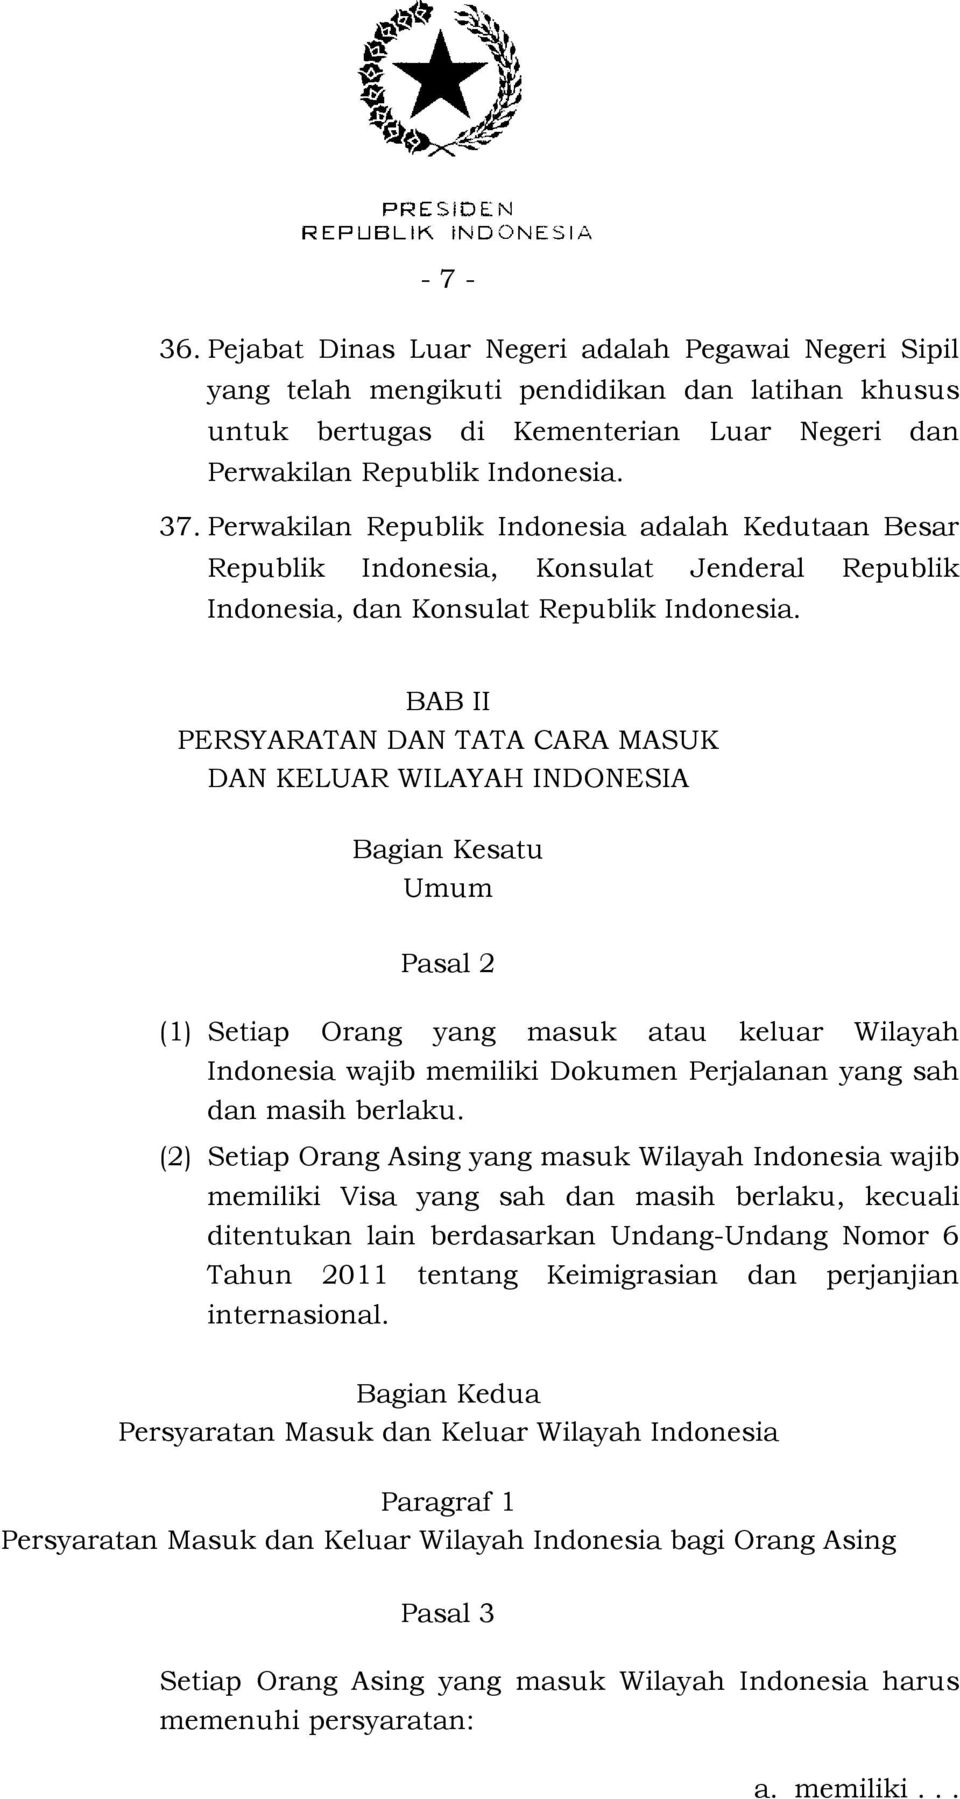 BAB II PERSYARATAN DAN TATA CARA MASUK DAN KELUAR WILAYAH INDONESIA Bagian Kesatu Umum Pasal 2 (1) Setiap Orang yang masuk atau keluar Wilayah Indonesia wajib memiliki Dokumen Perjalanan yang sah dan